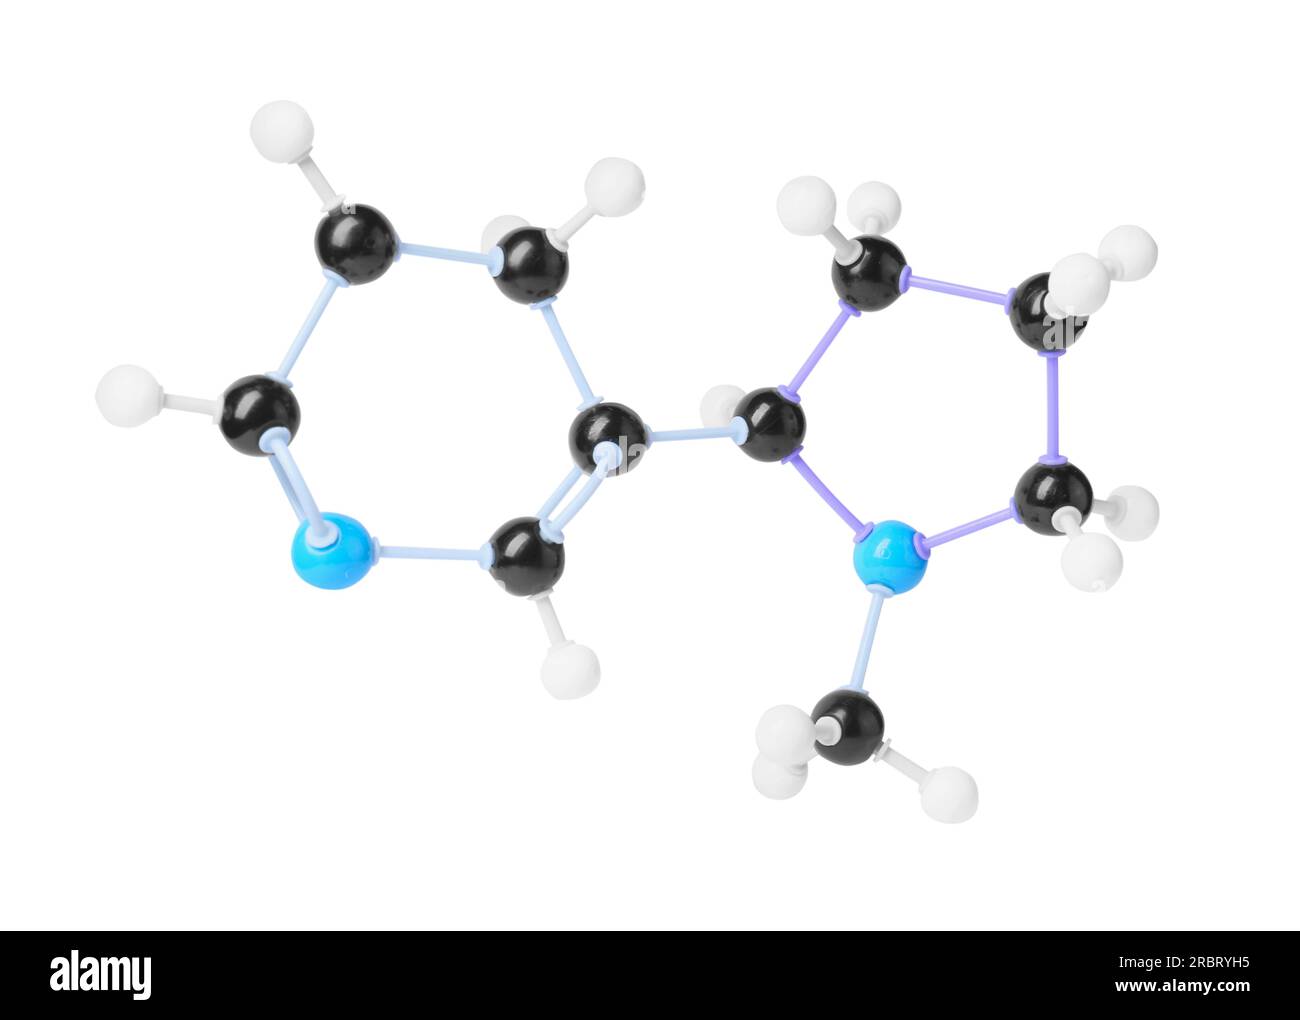 Molécule de nicotine sur fond blanc. Modèle chimique Banque D'Images